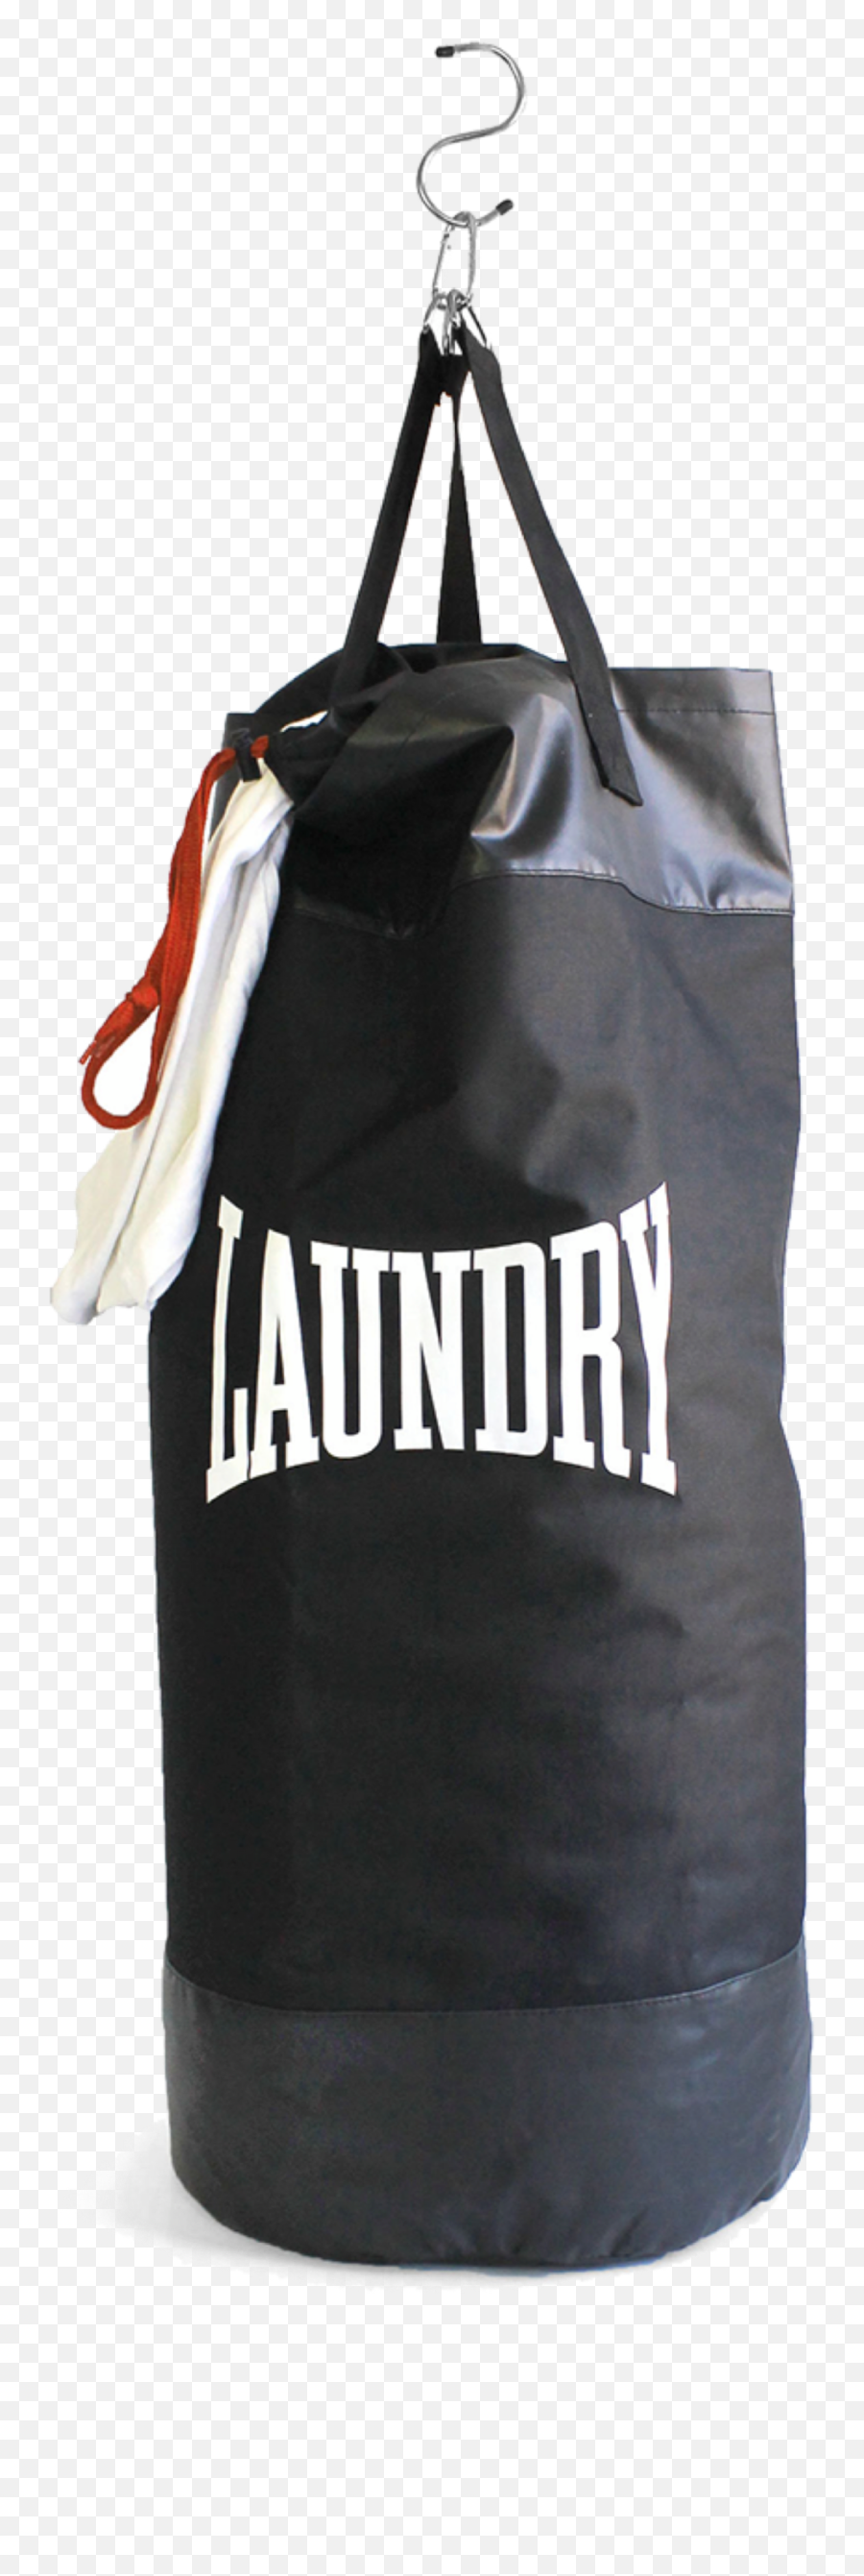 Punchingbag Punching Bag Freetoedit - Punching Bag Laundry Bag Emoji,Punching Bag Emoji